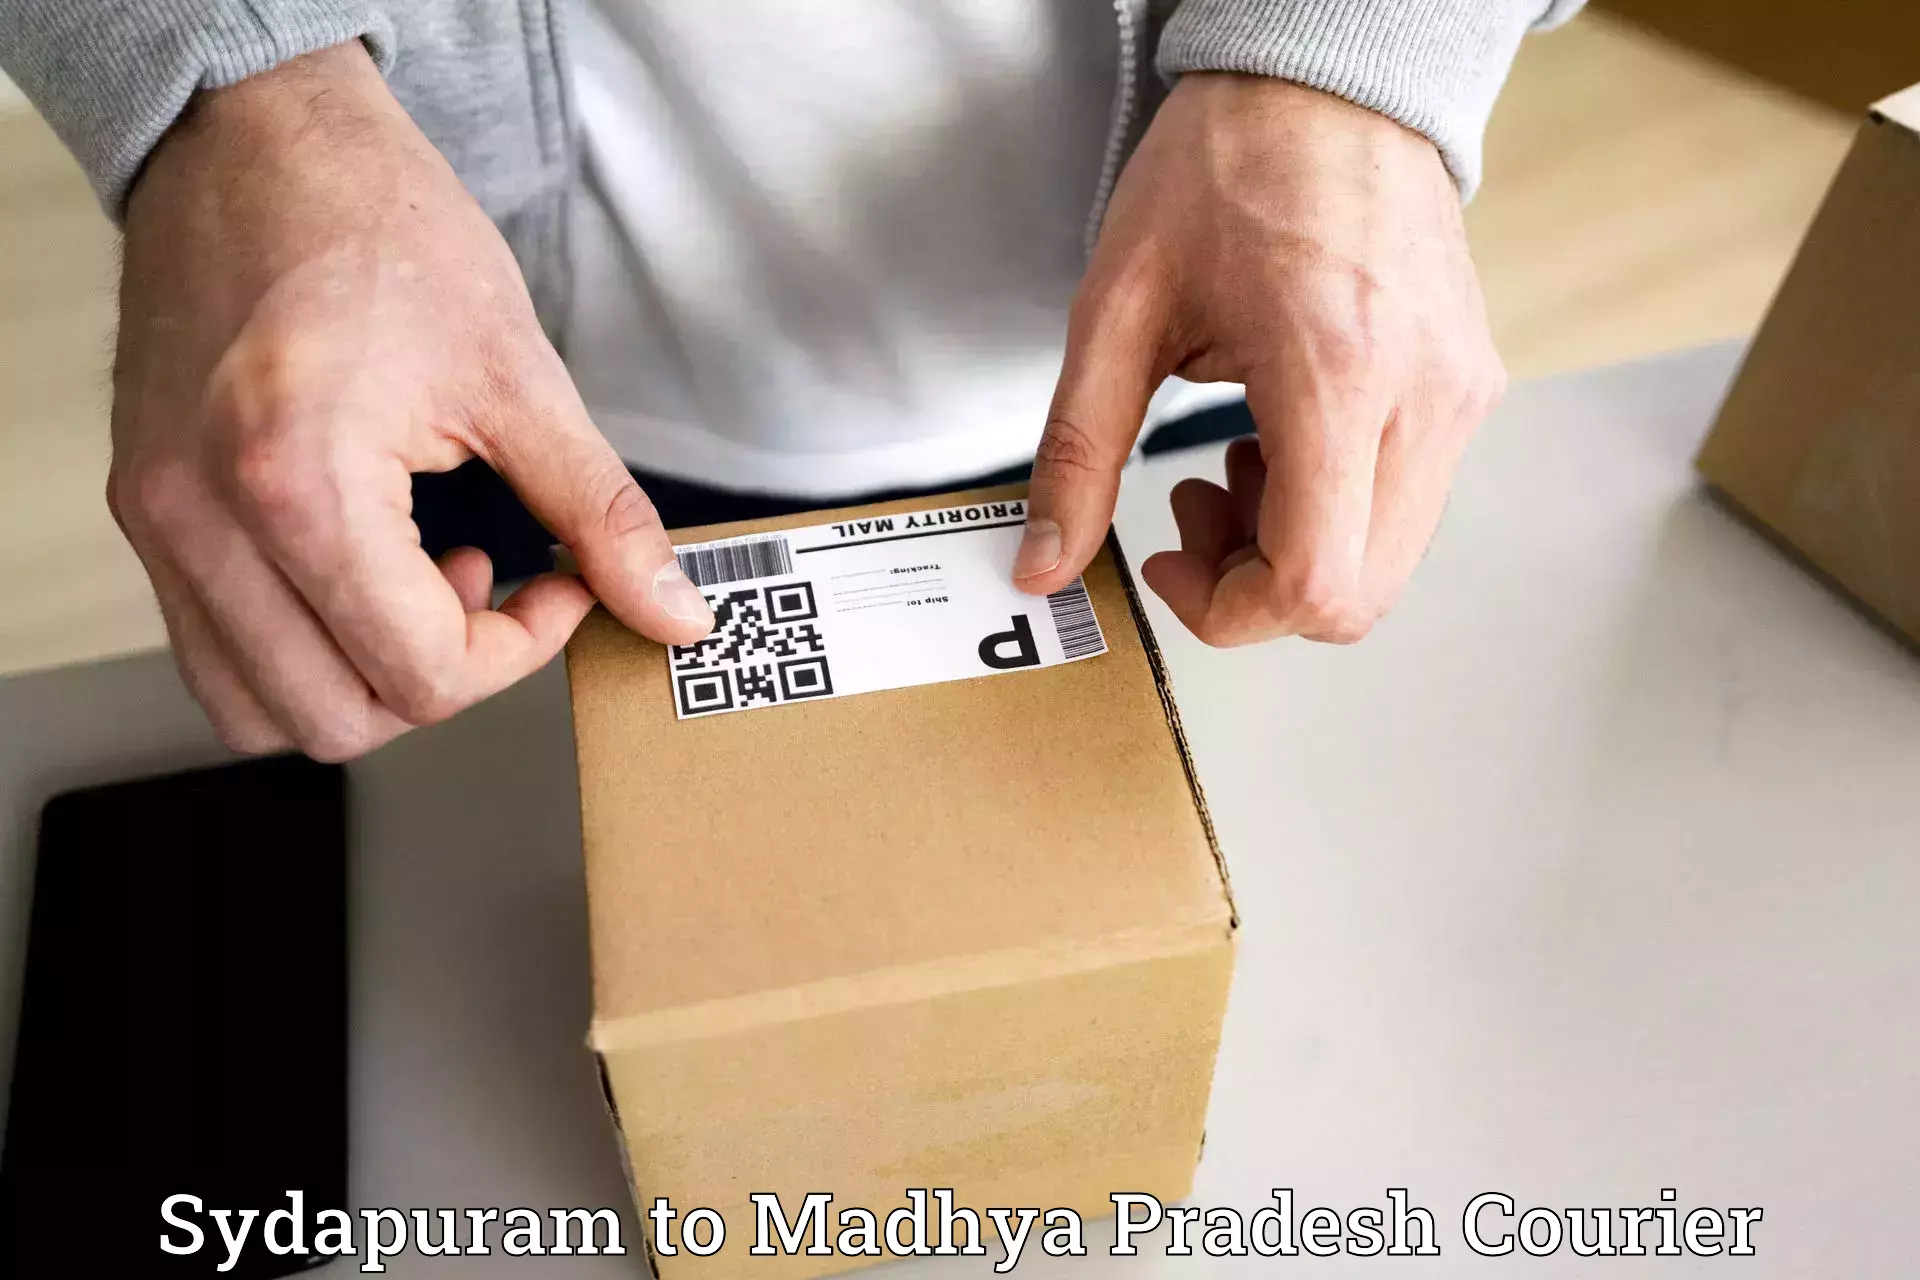 Express courier capabilities Sydapuram to Madhya Pradesh